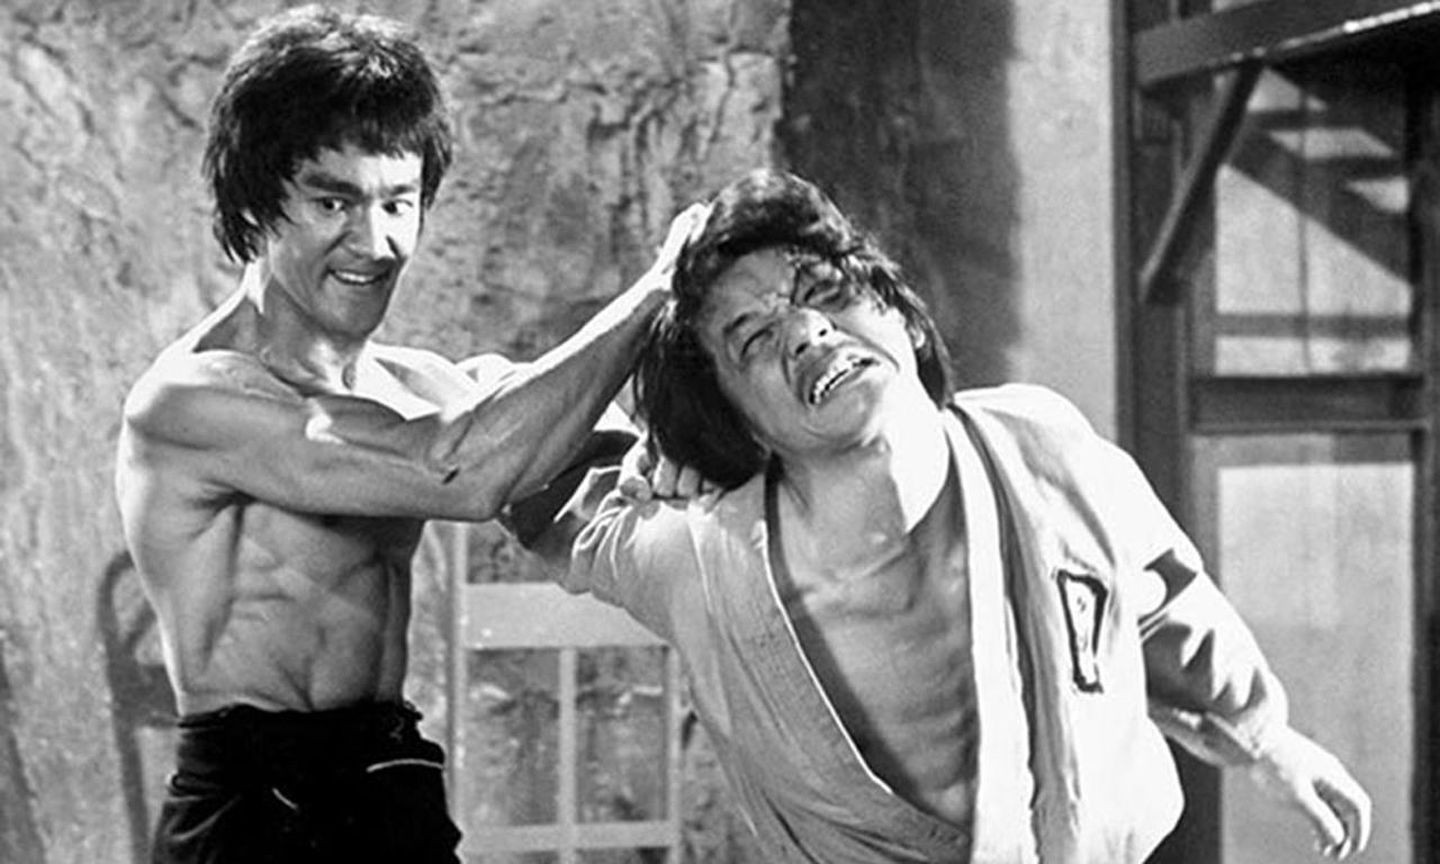 1972年的《龙争虎斗》可以看到尚未走红的成龙被主角李小龙吊打的镜头，当年恐怕没有人会料到这个大鼻子龙虎武师在往后几十年影响了华人影坛。